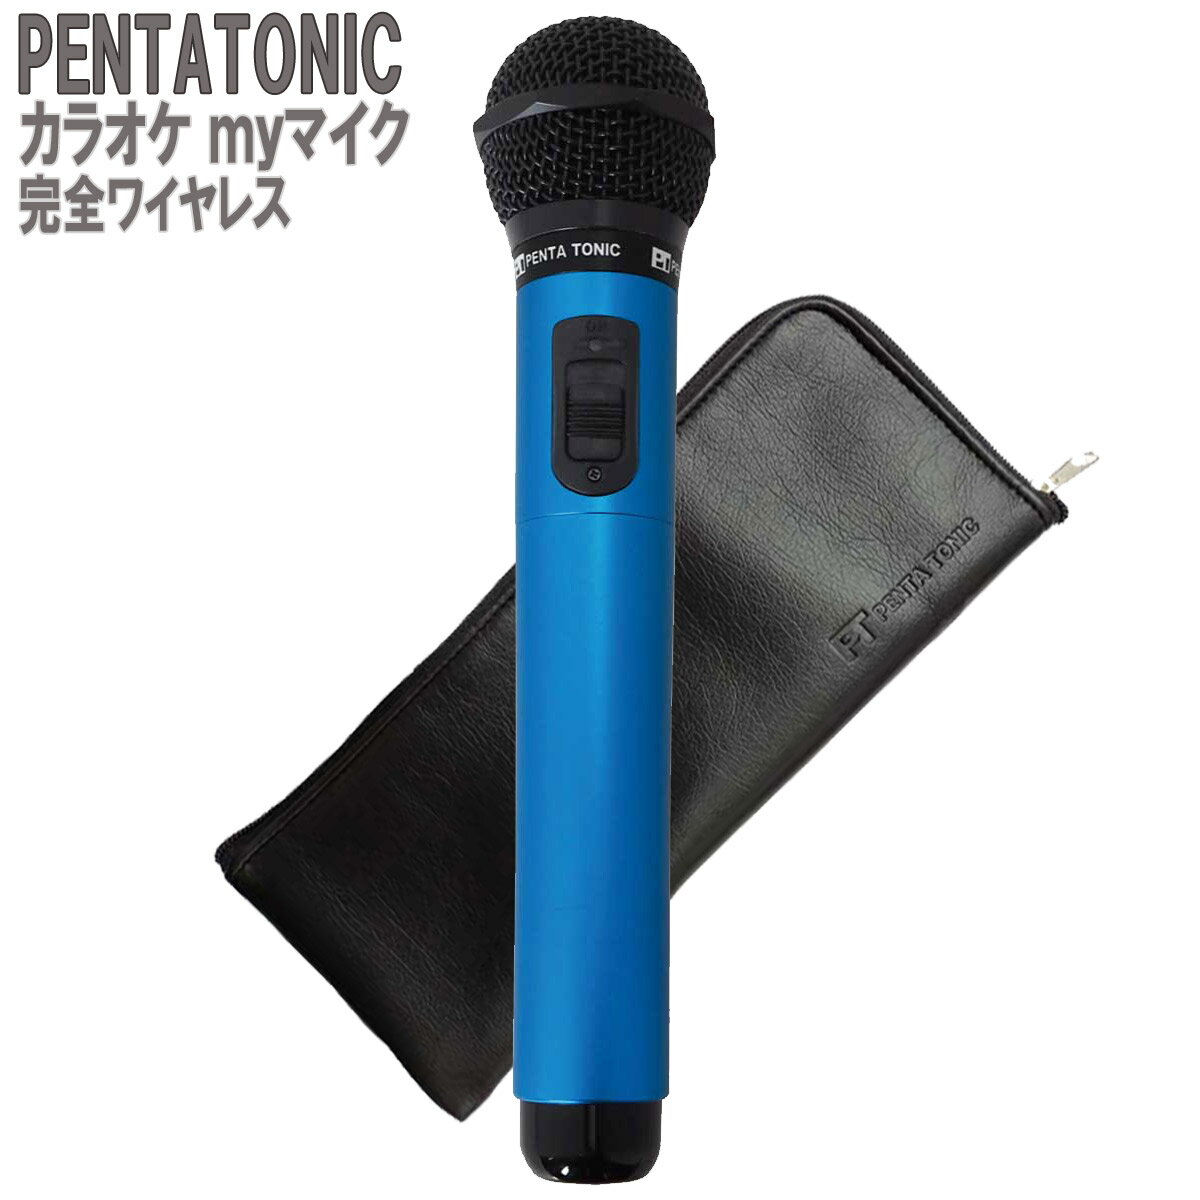 PENTATONIC カラオケマイク GTM-150 ブルー ポーチセット カラオケ用マイク 赤外線ワイヤレスマイク [ DAM/ JOY SOUND] ペンタトニック GMT150